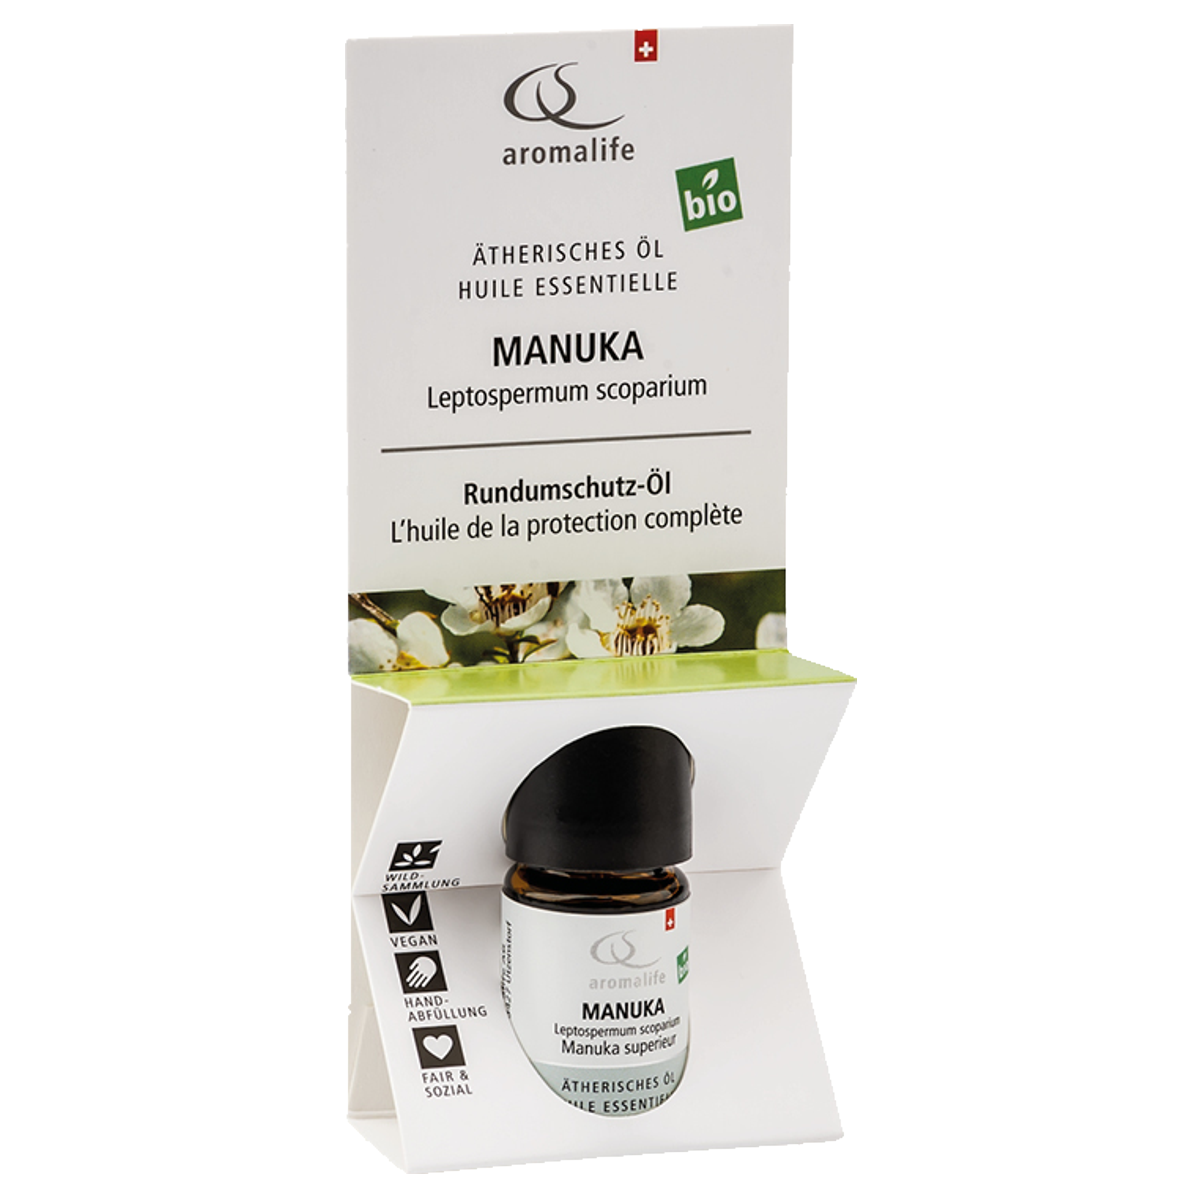 Aromalife Top Manuka ätherisches Öl Bio 5 ml